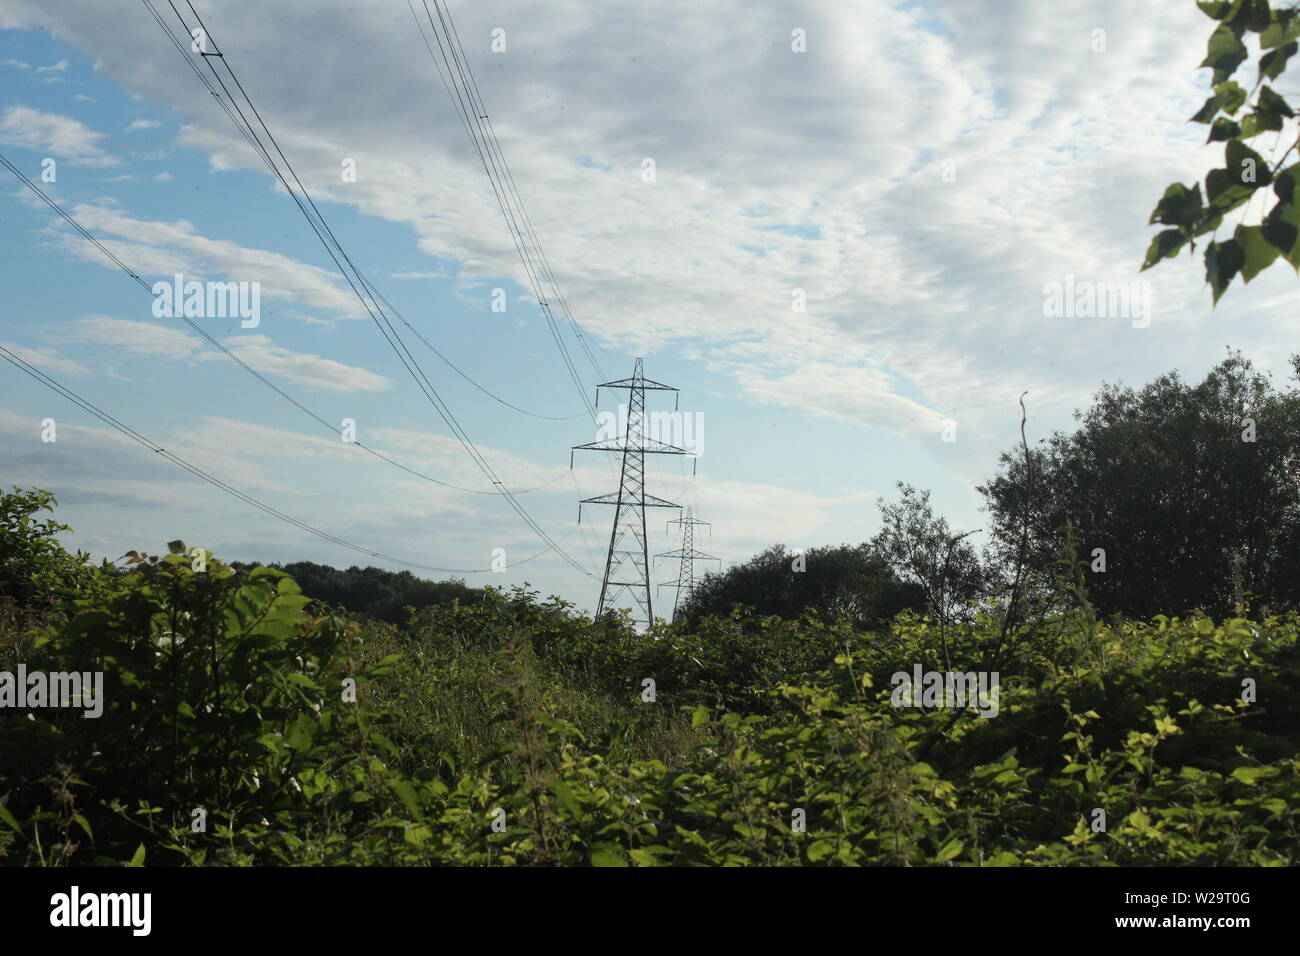 Imagen de pylon detrás de arbustos en praderas en un día soleado Foto de stock